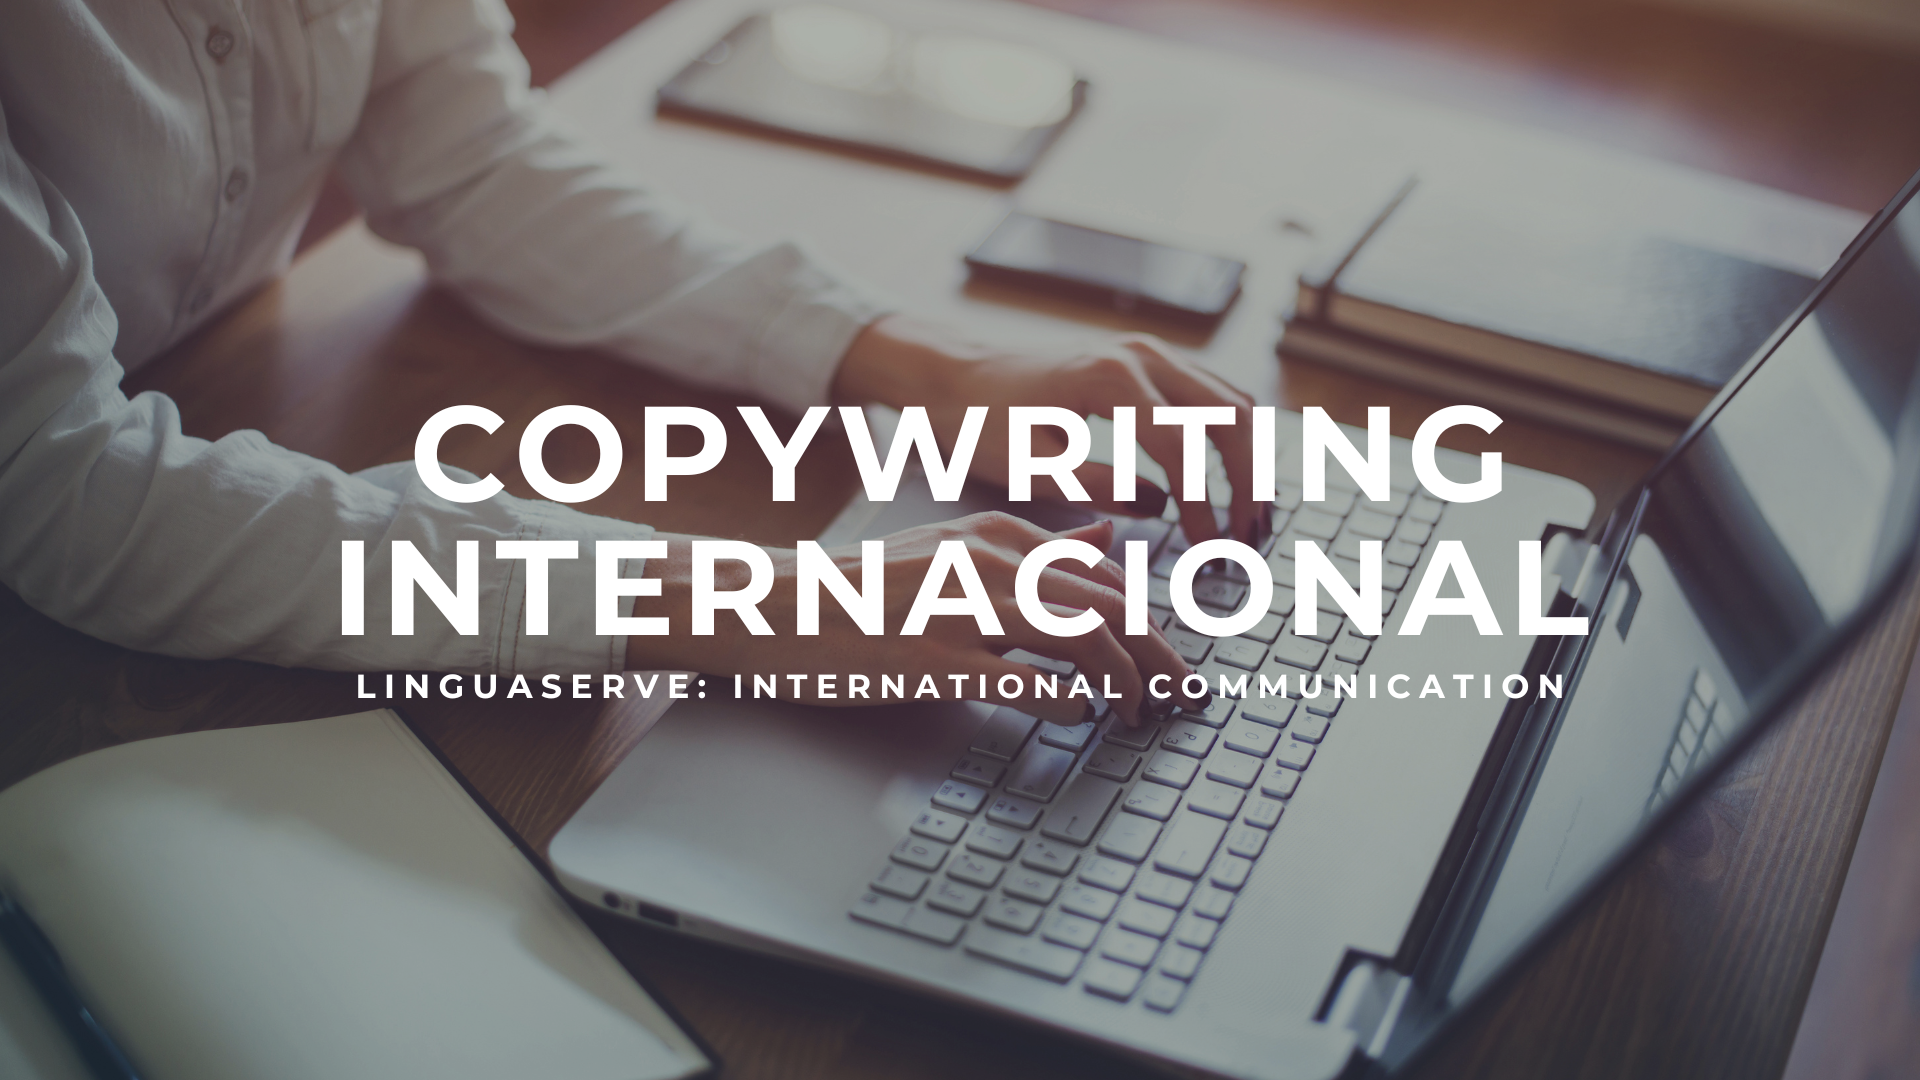 ¿Conoces cuáles son las mejores técnicas para un servicio de copywriting internacional?